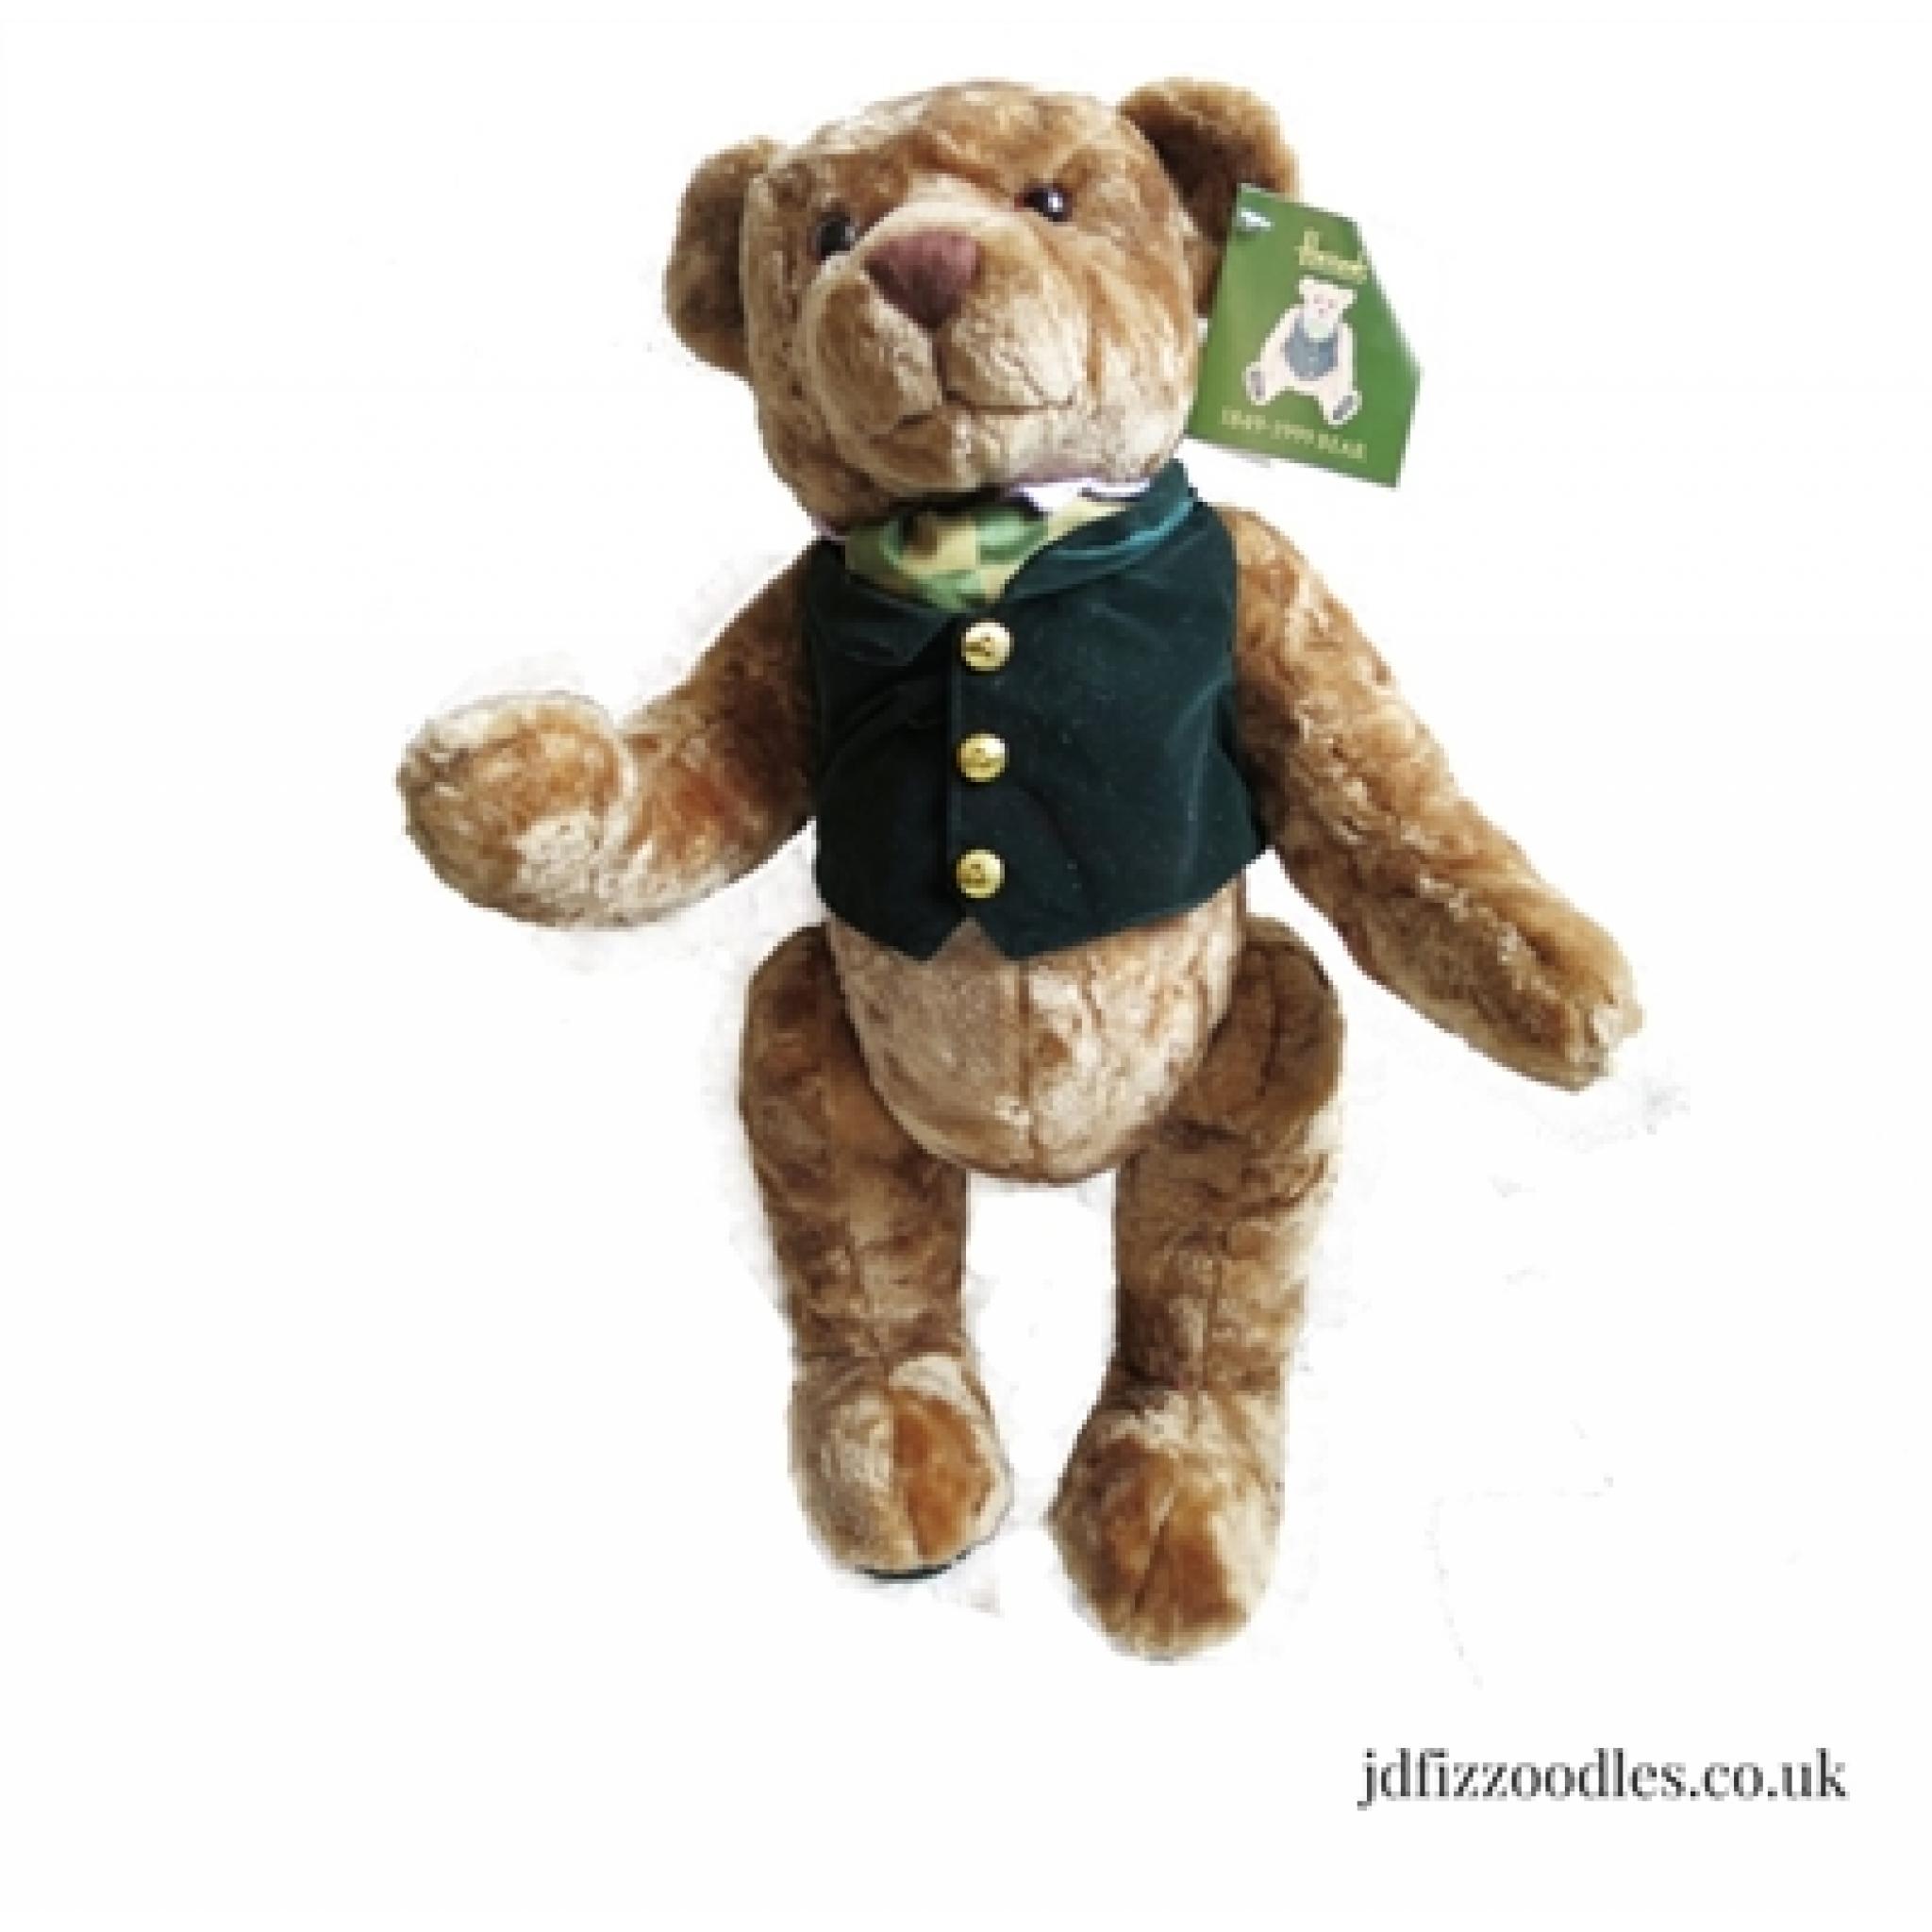 Harrods Teddy Bear 1849 - 1999 teddy bear